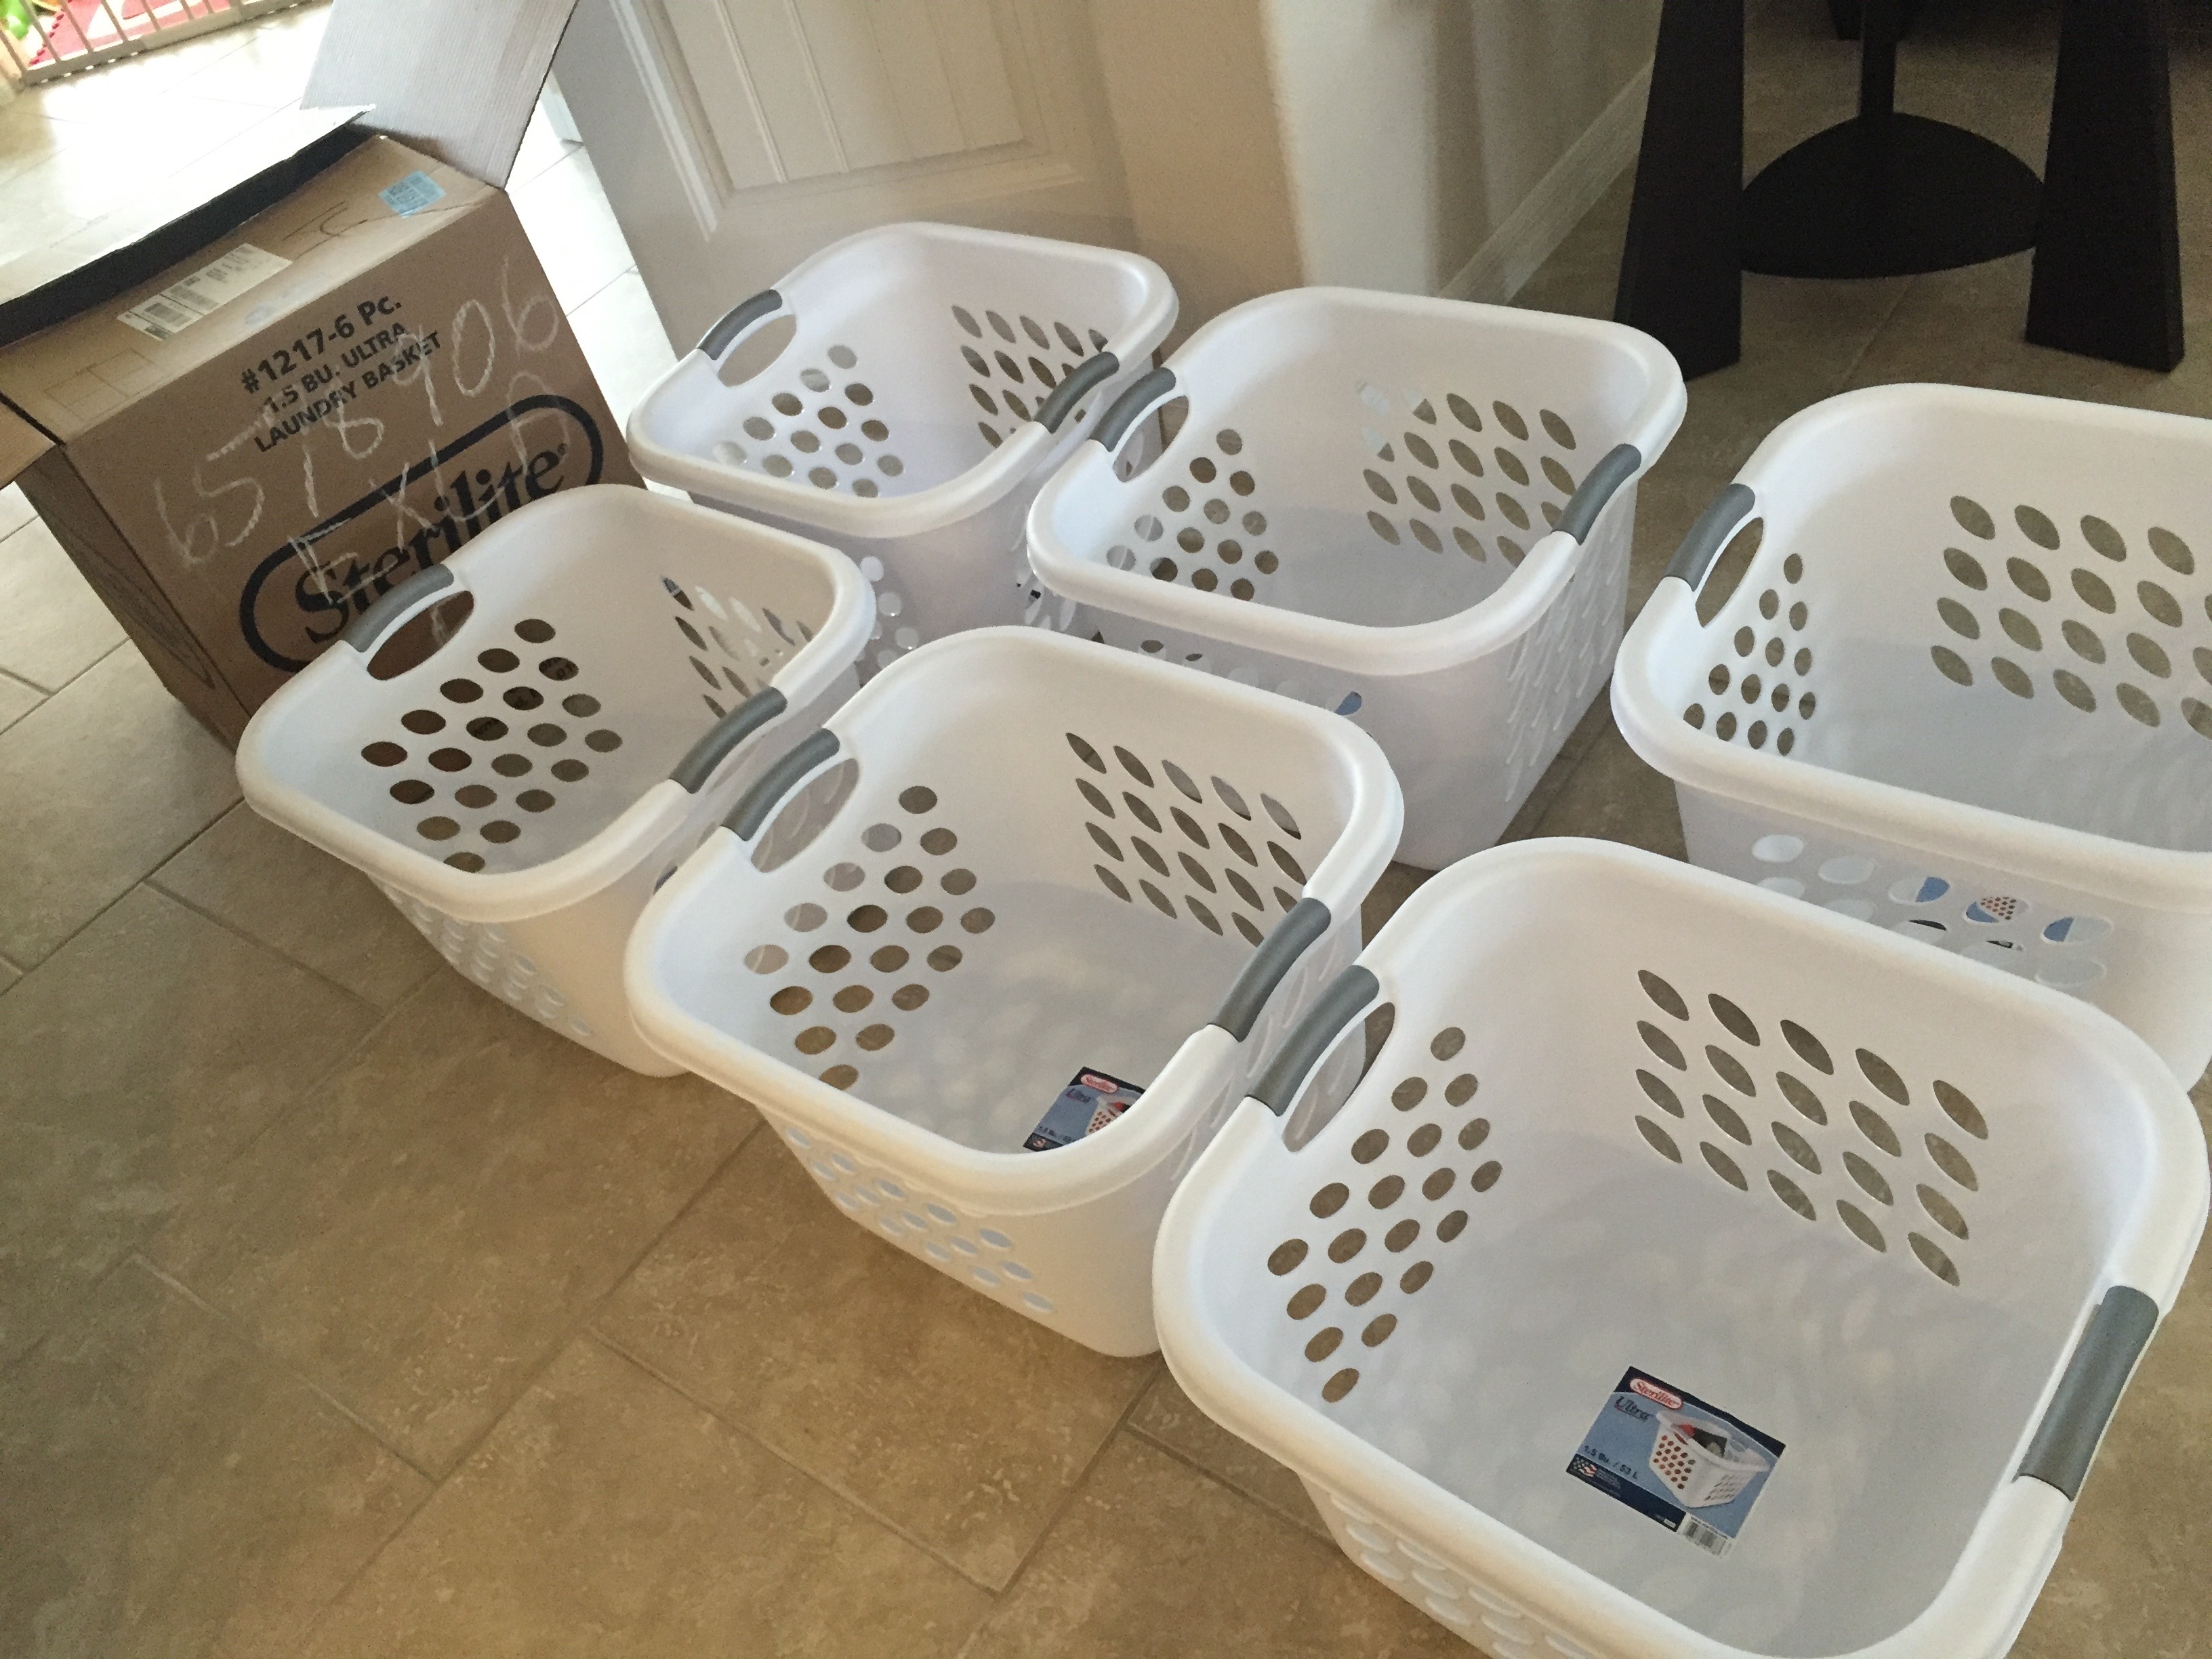 Six laundry baskets